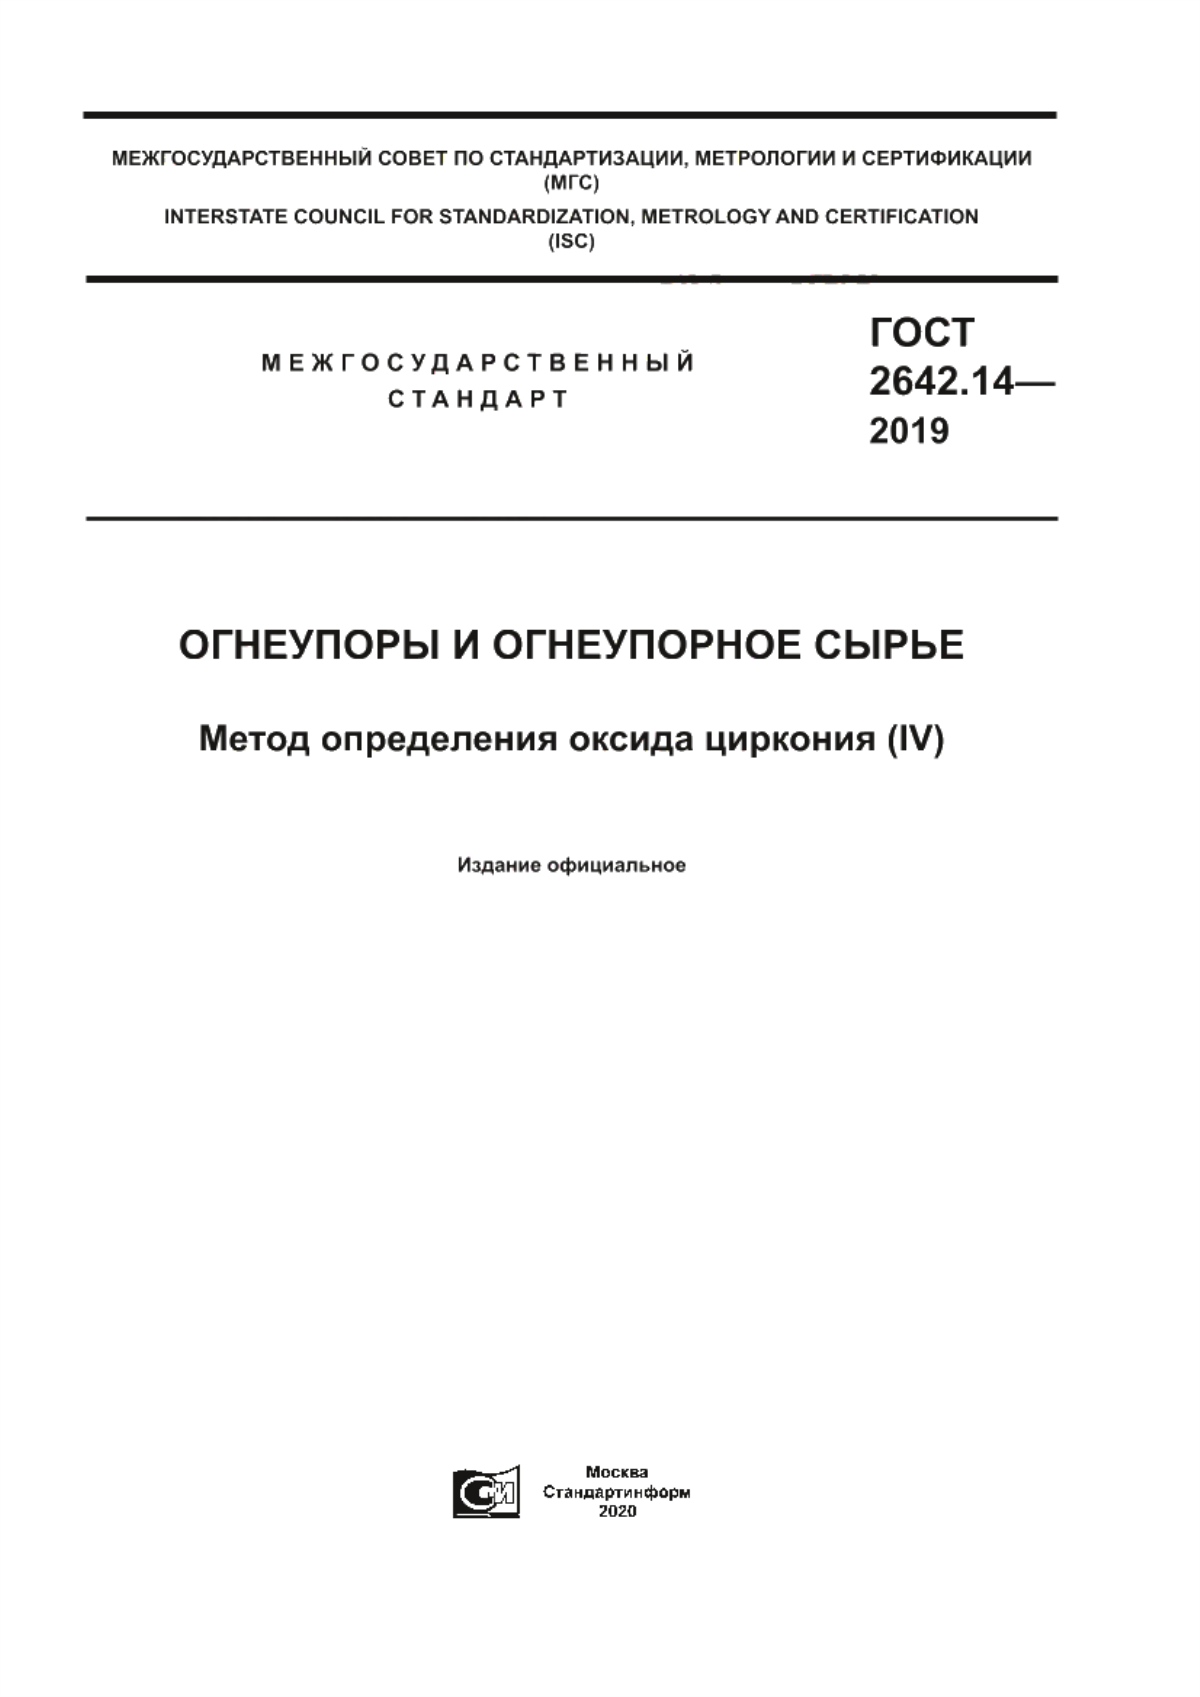 ГОСТ 2642.14-2019 Огнеупоры и огнеупорное сырье. Метод определения оксида циркония (IV)